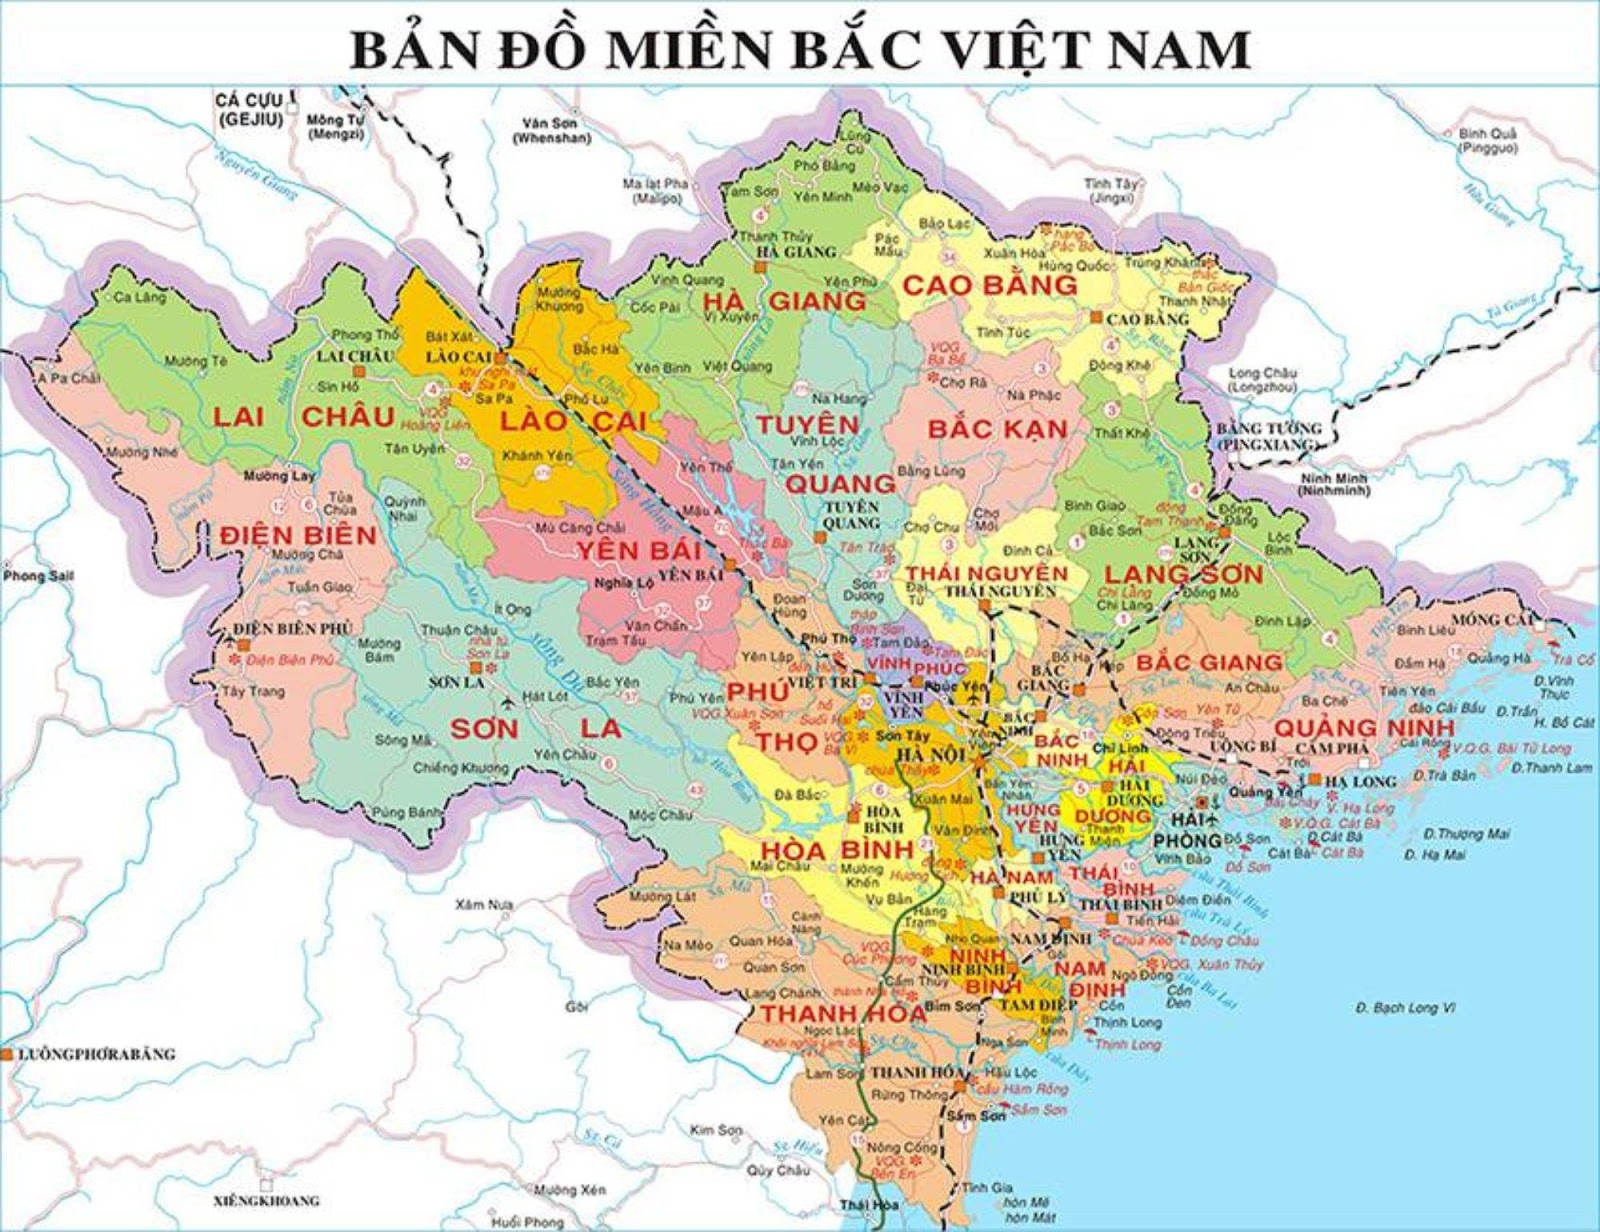 Chúng tôi cung cấp bản đồ miền Bắc Việt Nam mới nhất với một loạt các thông tin địa lý và du lịch cập nhật nhất. Dễ dàng phát hiện và truy cập vào hàng trăm địa danh, các điểm cắm trại, các làng truyền thống và con đường văn hóa của miền Bắc Việt Nam.